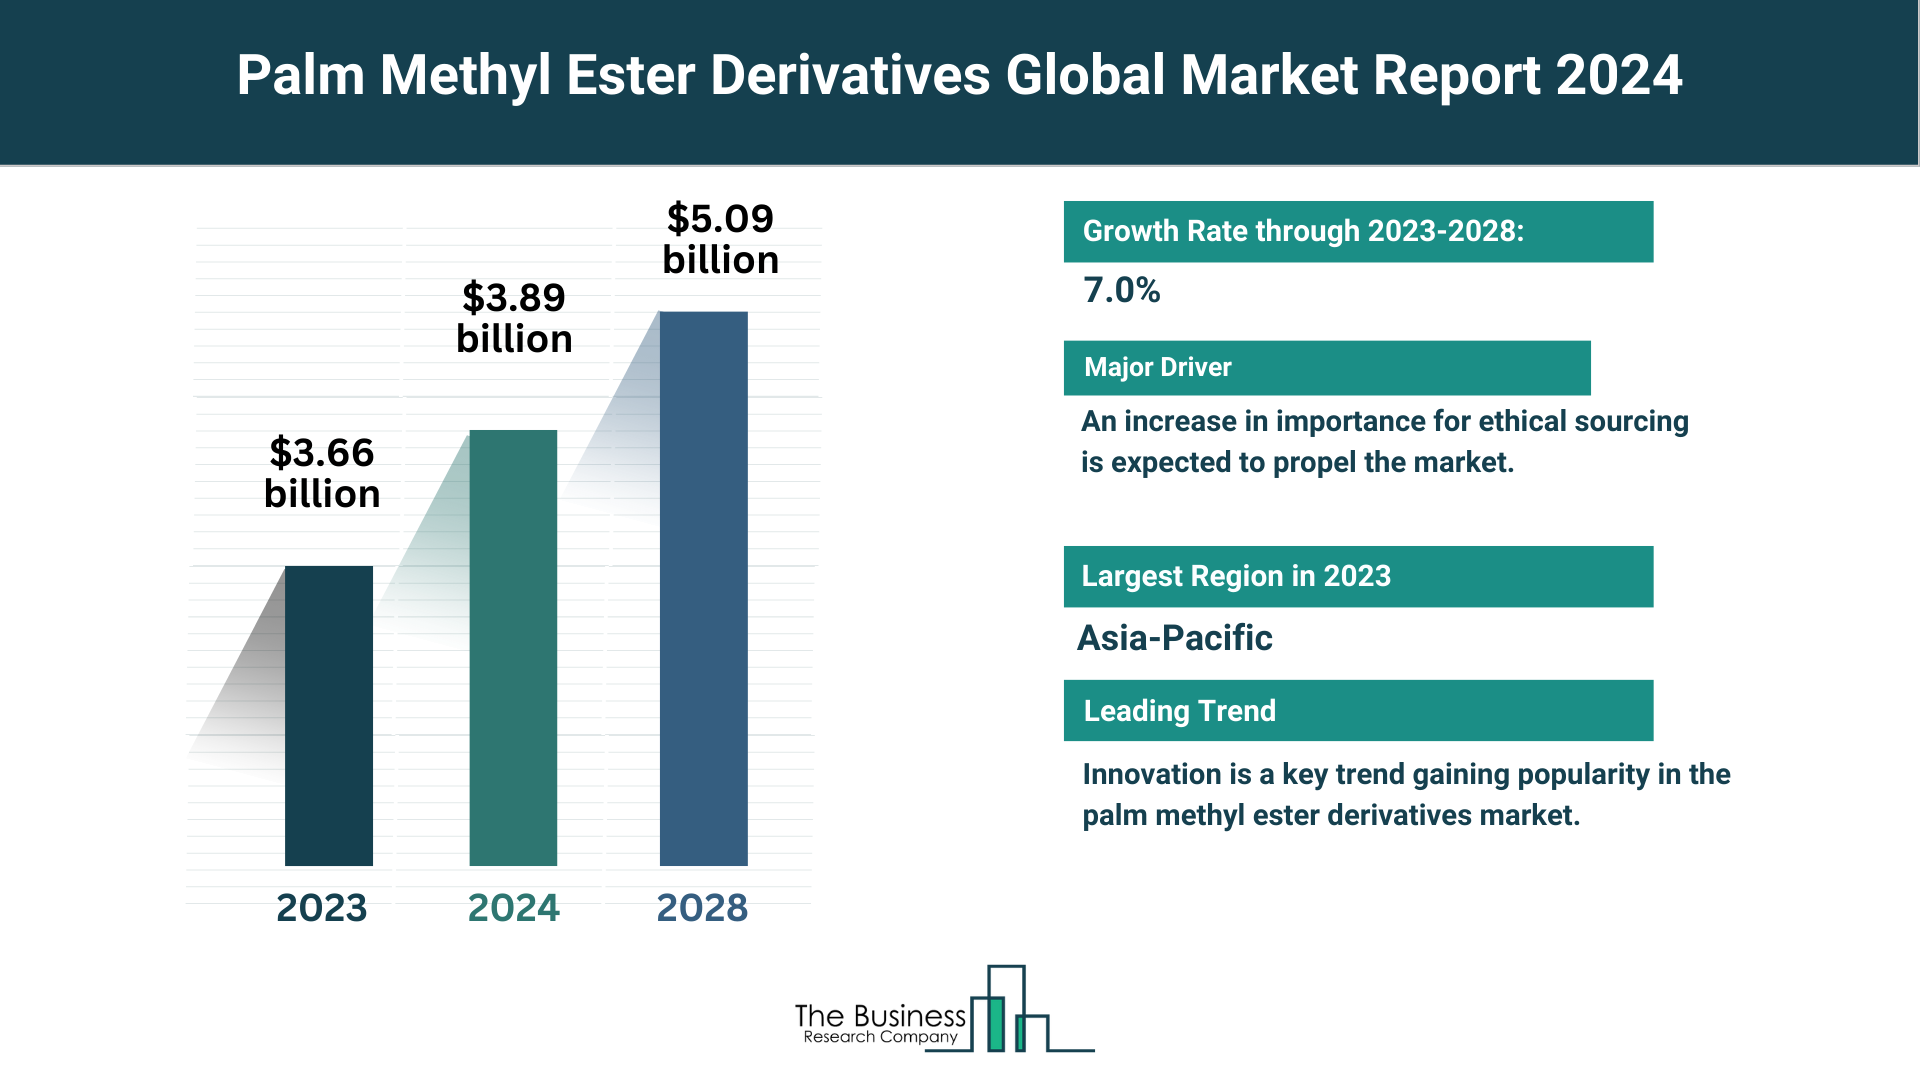 Global Palm Methyl Ester Derivatives Market